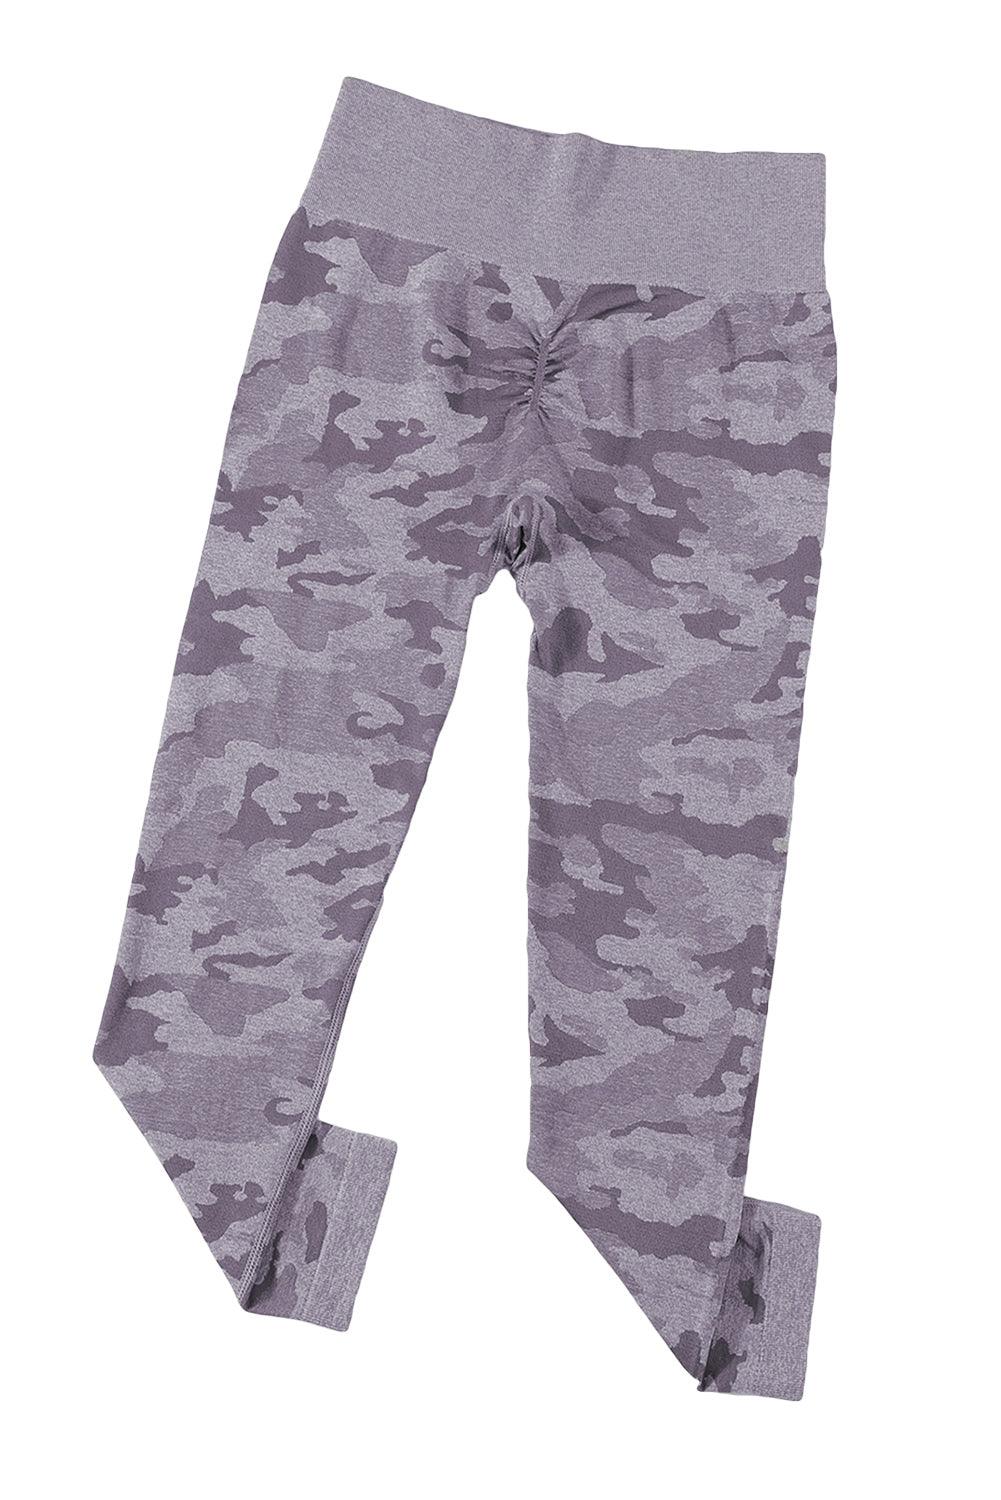 Seamless Camo Print Butt Lift High Waist Yoga Pants - L & M Kee, LLC